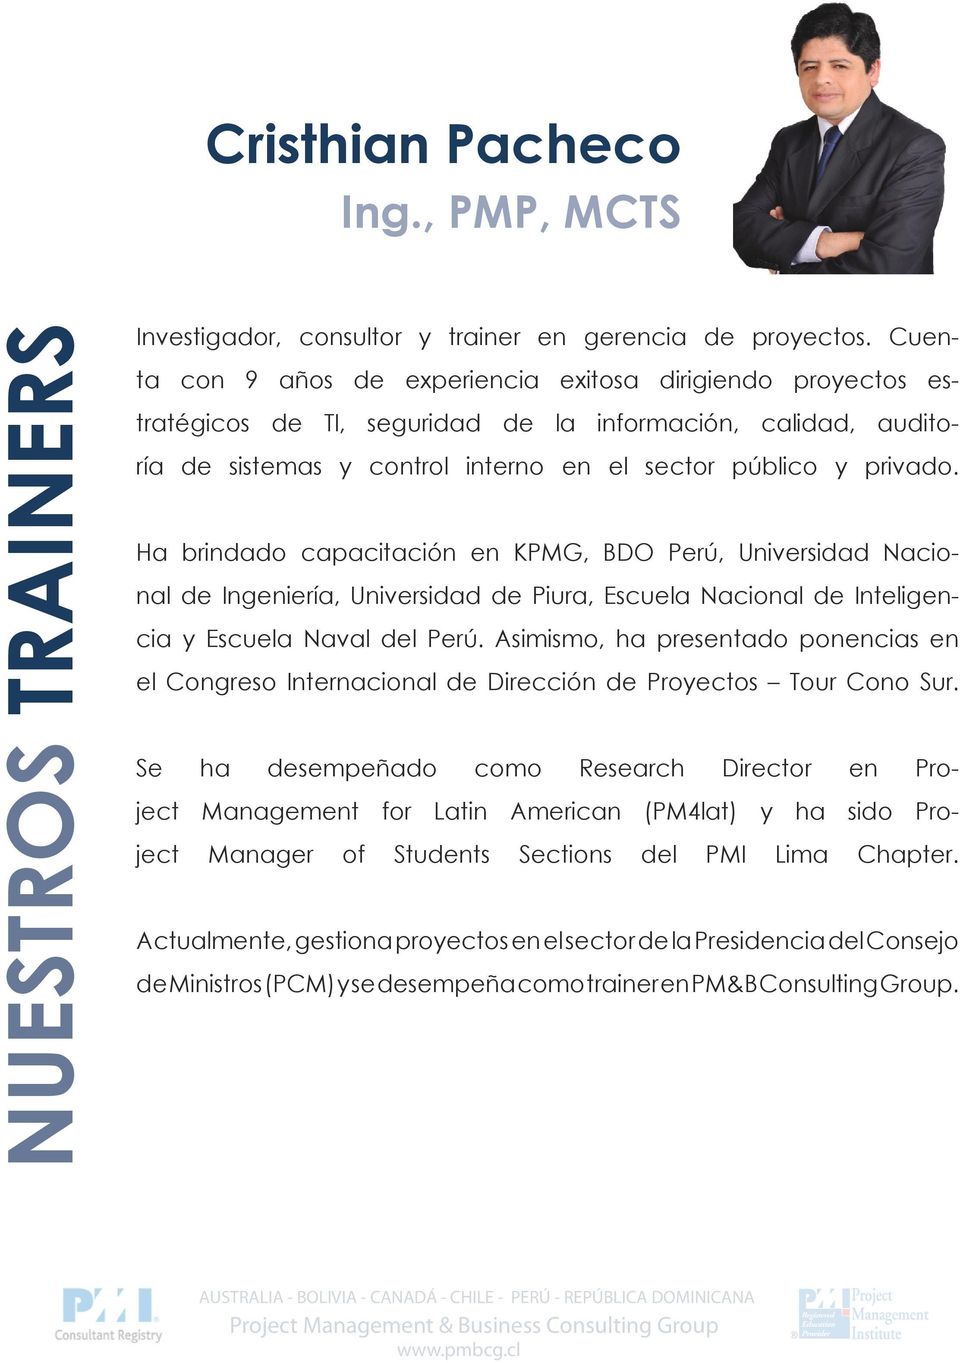 Ha brindado capacitación en KPMG, BDO Perú, Universidad Nacional de Ingeniería, Universidad de Piura, Escuela Nacional de Inteligencia y Escuela Naval del Perú.